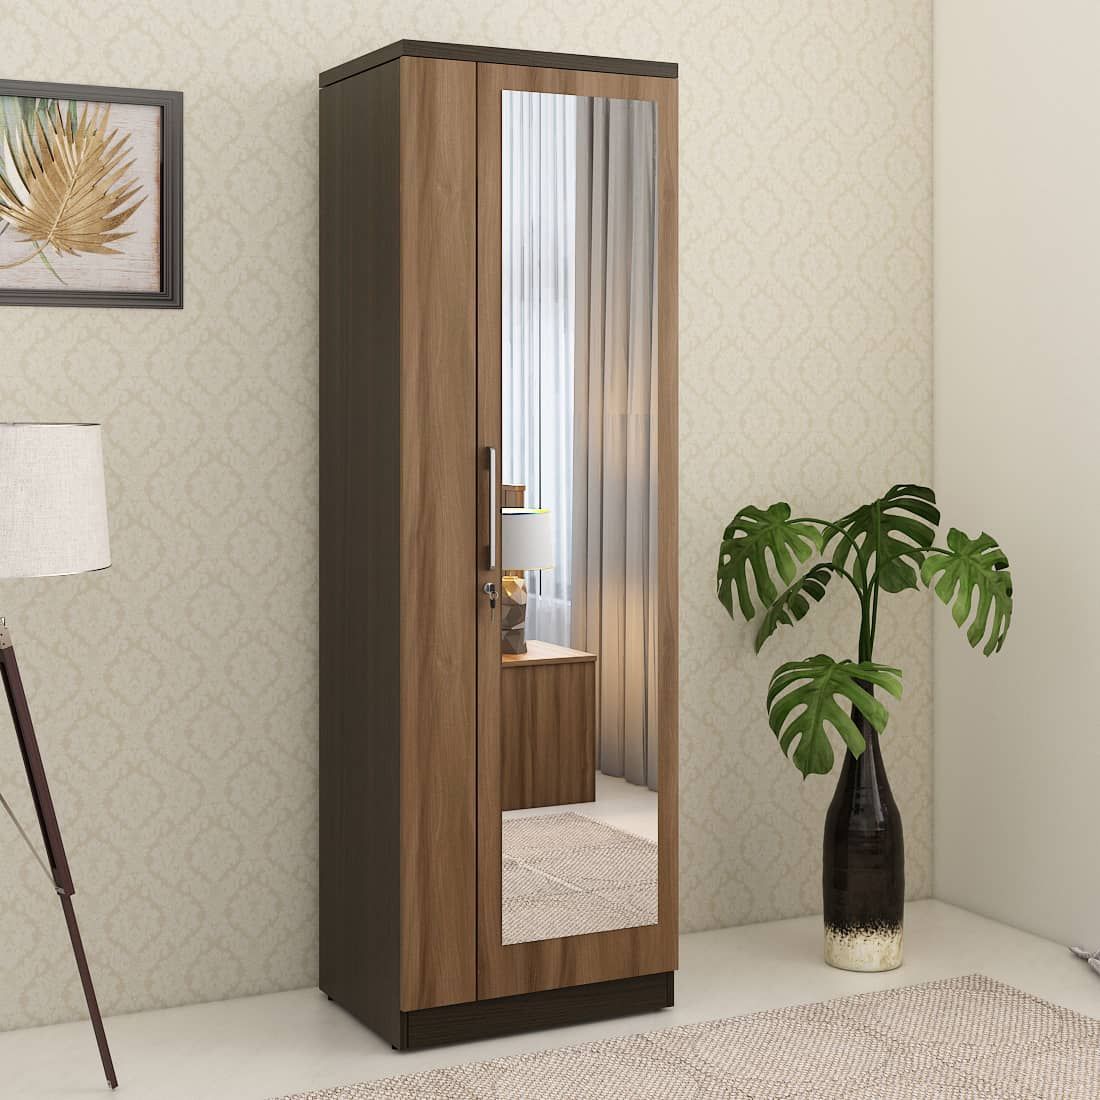 Kosmo Ken 1 Door Wardrobe With Mirror Walnut Bronze Woodpore | Spacewood  Ecommerce With Regard To Single Door Mirrored Wardrobes (Photo 2 of 15)